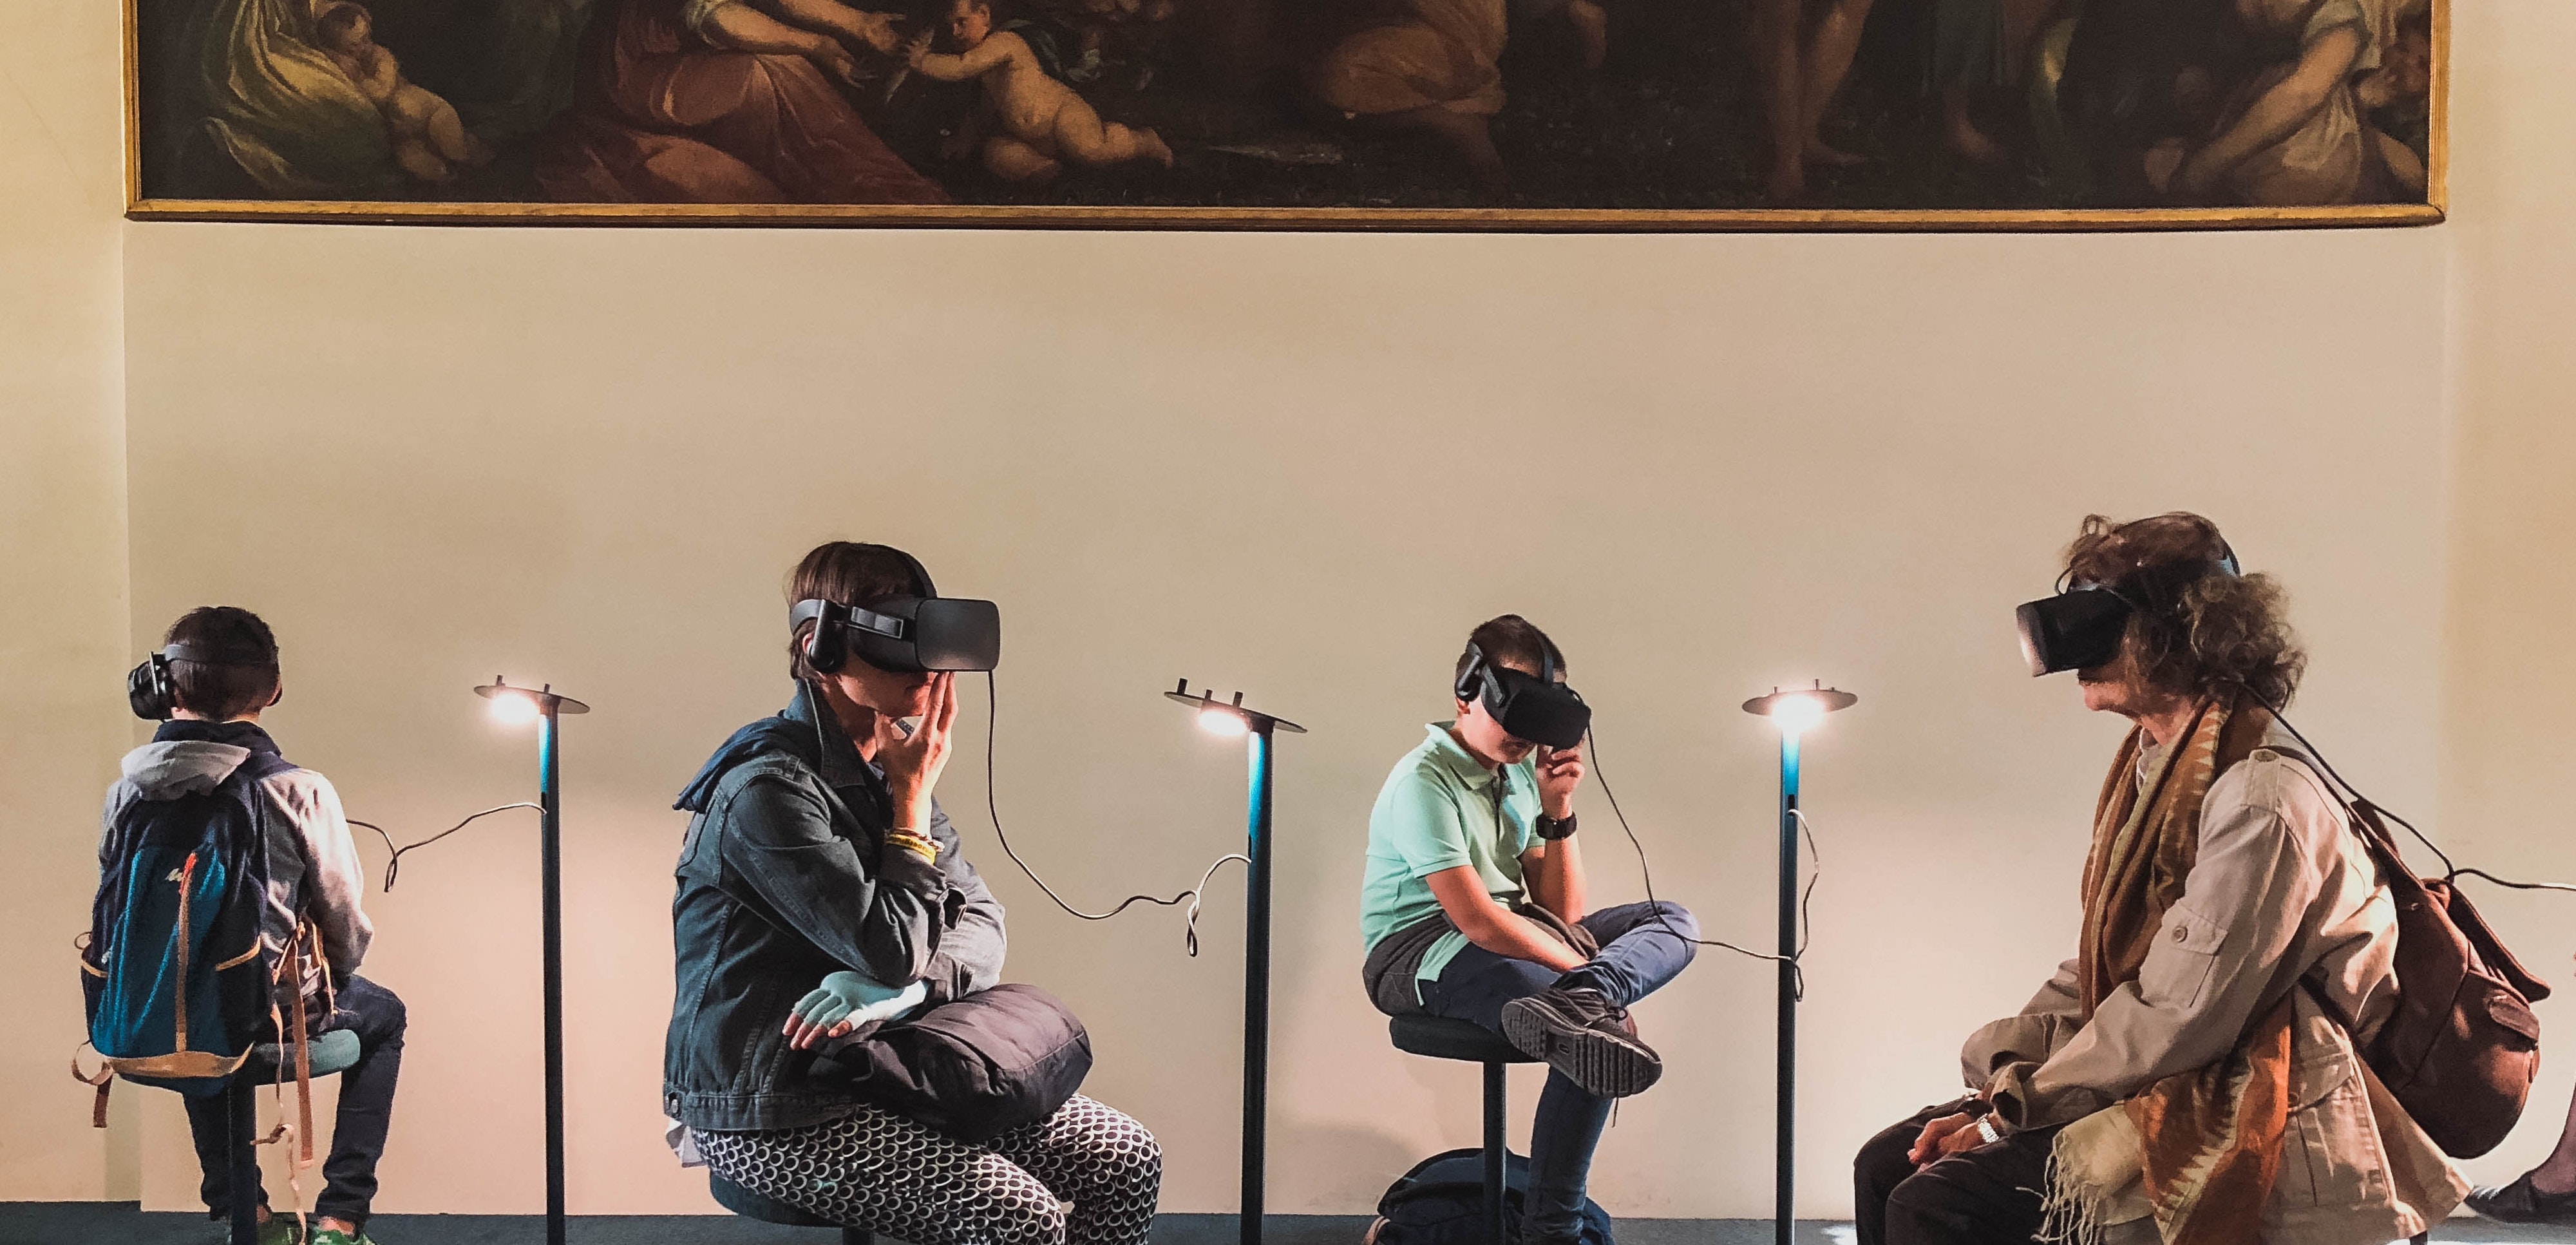 Menschengruppe mit VR-Brillen vor einem Gemälde